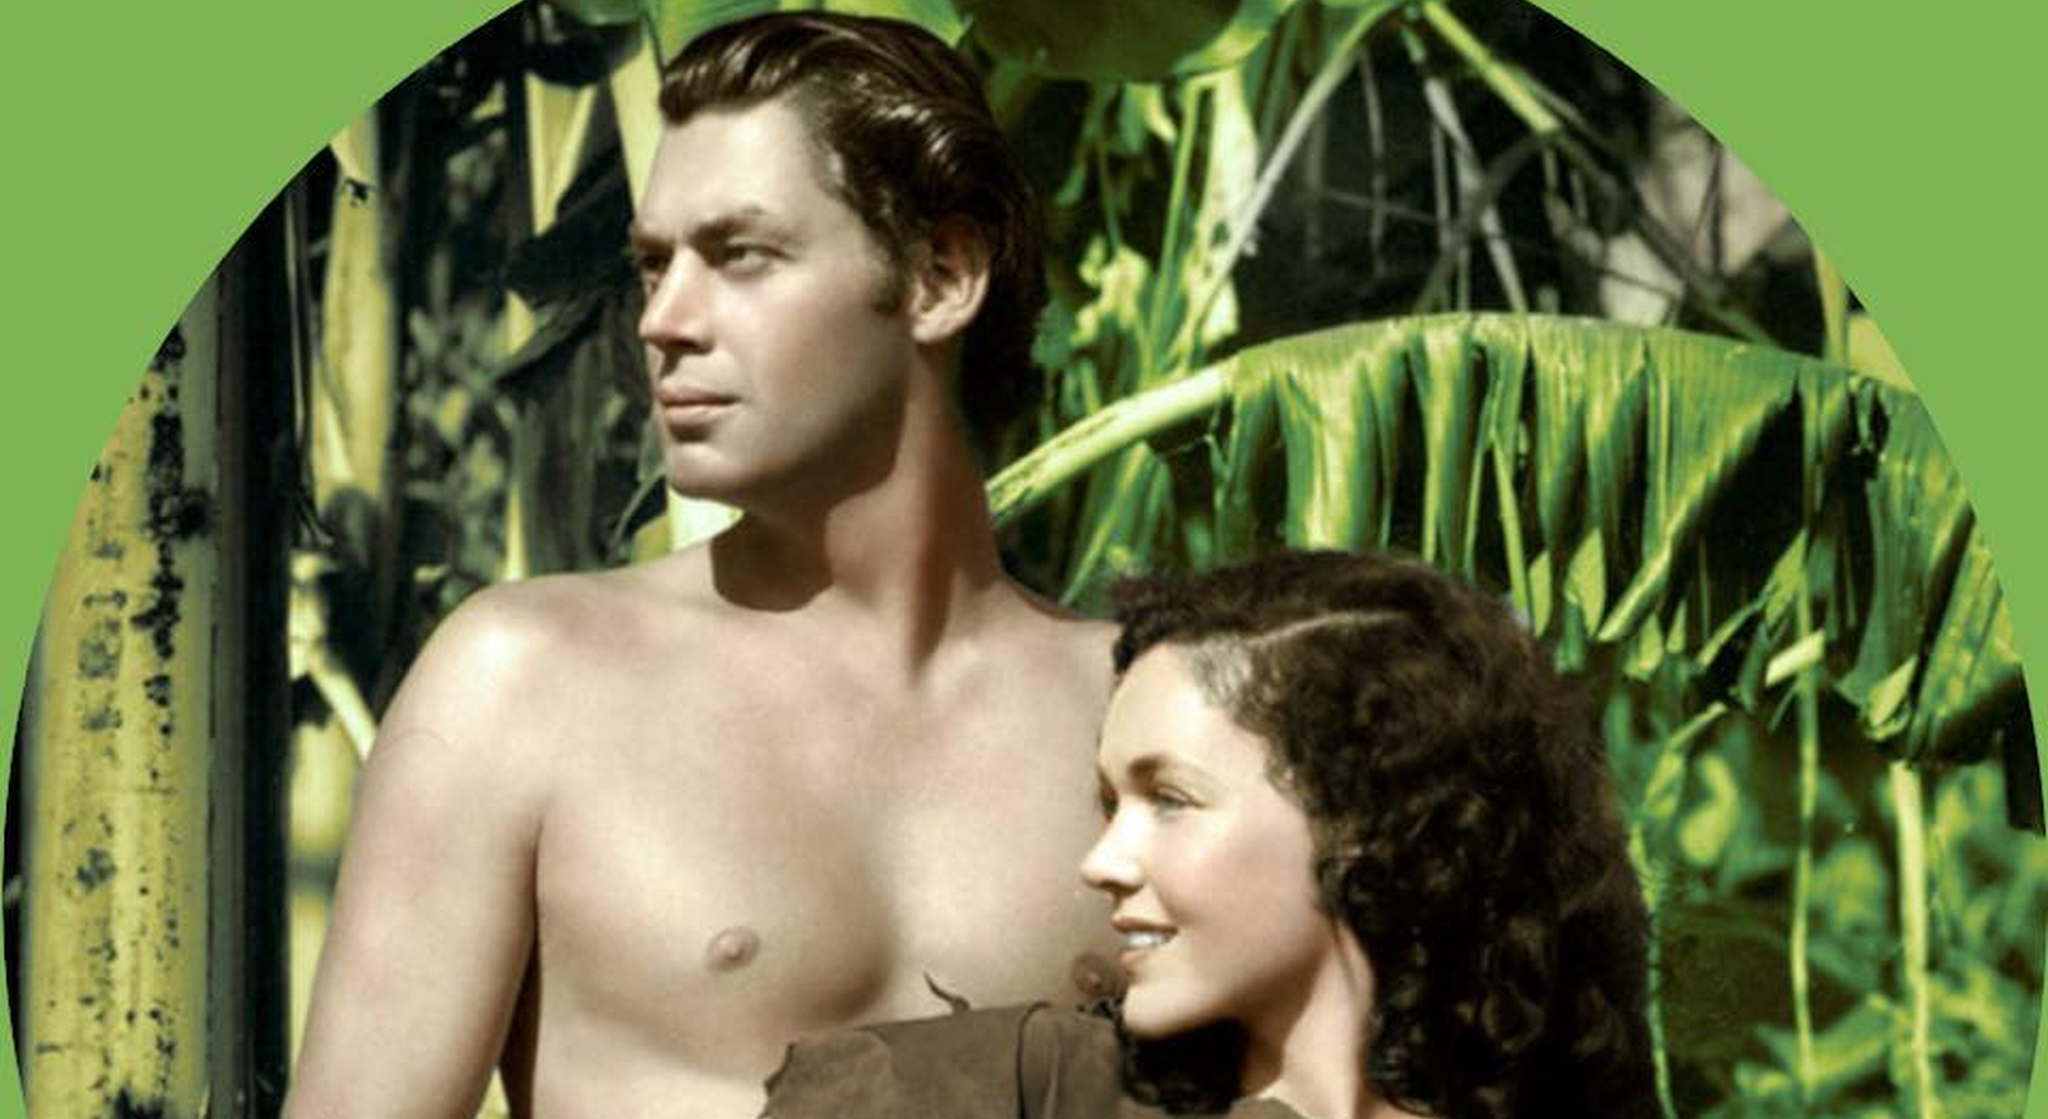 L’humour des clips du Collectif Tarzan déroute dans une campagne tendue